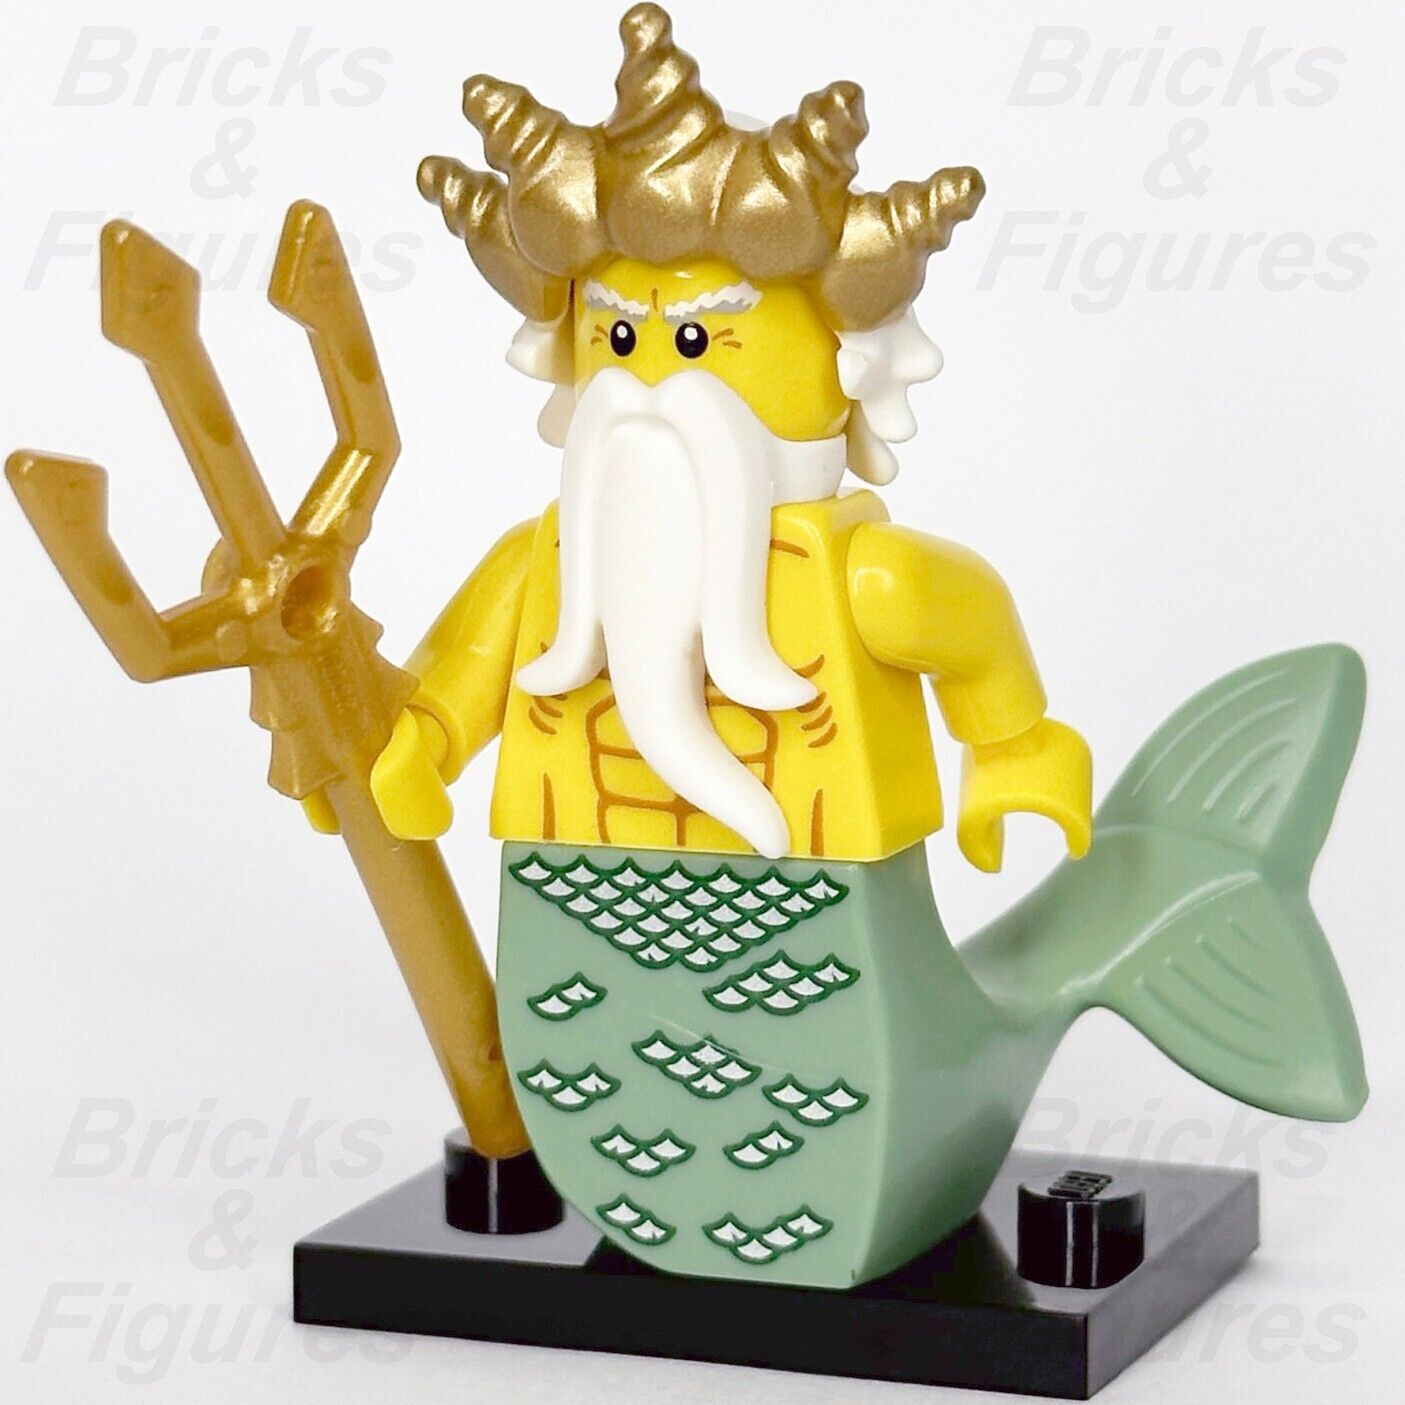 LEGO Ocean King Minifigure Merman Collectible Series 7 8831 col07-5 Mermaid #5 - Bricks & Figures